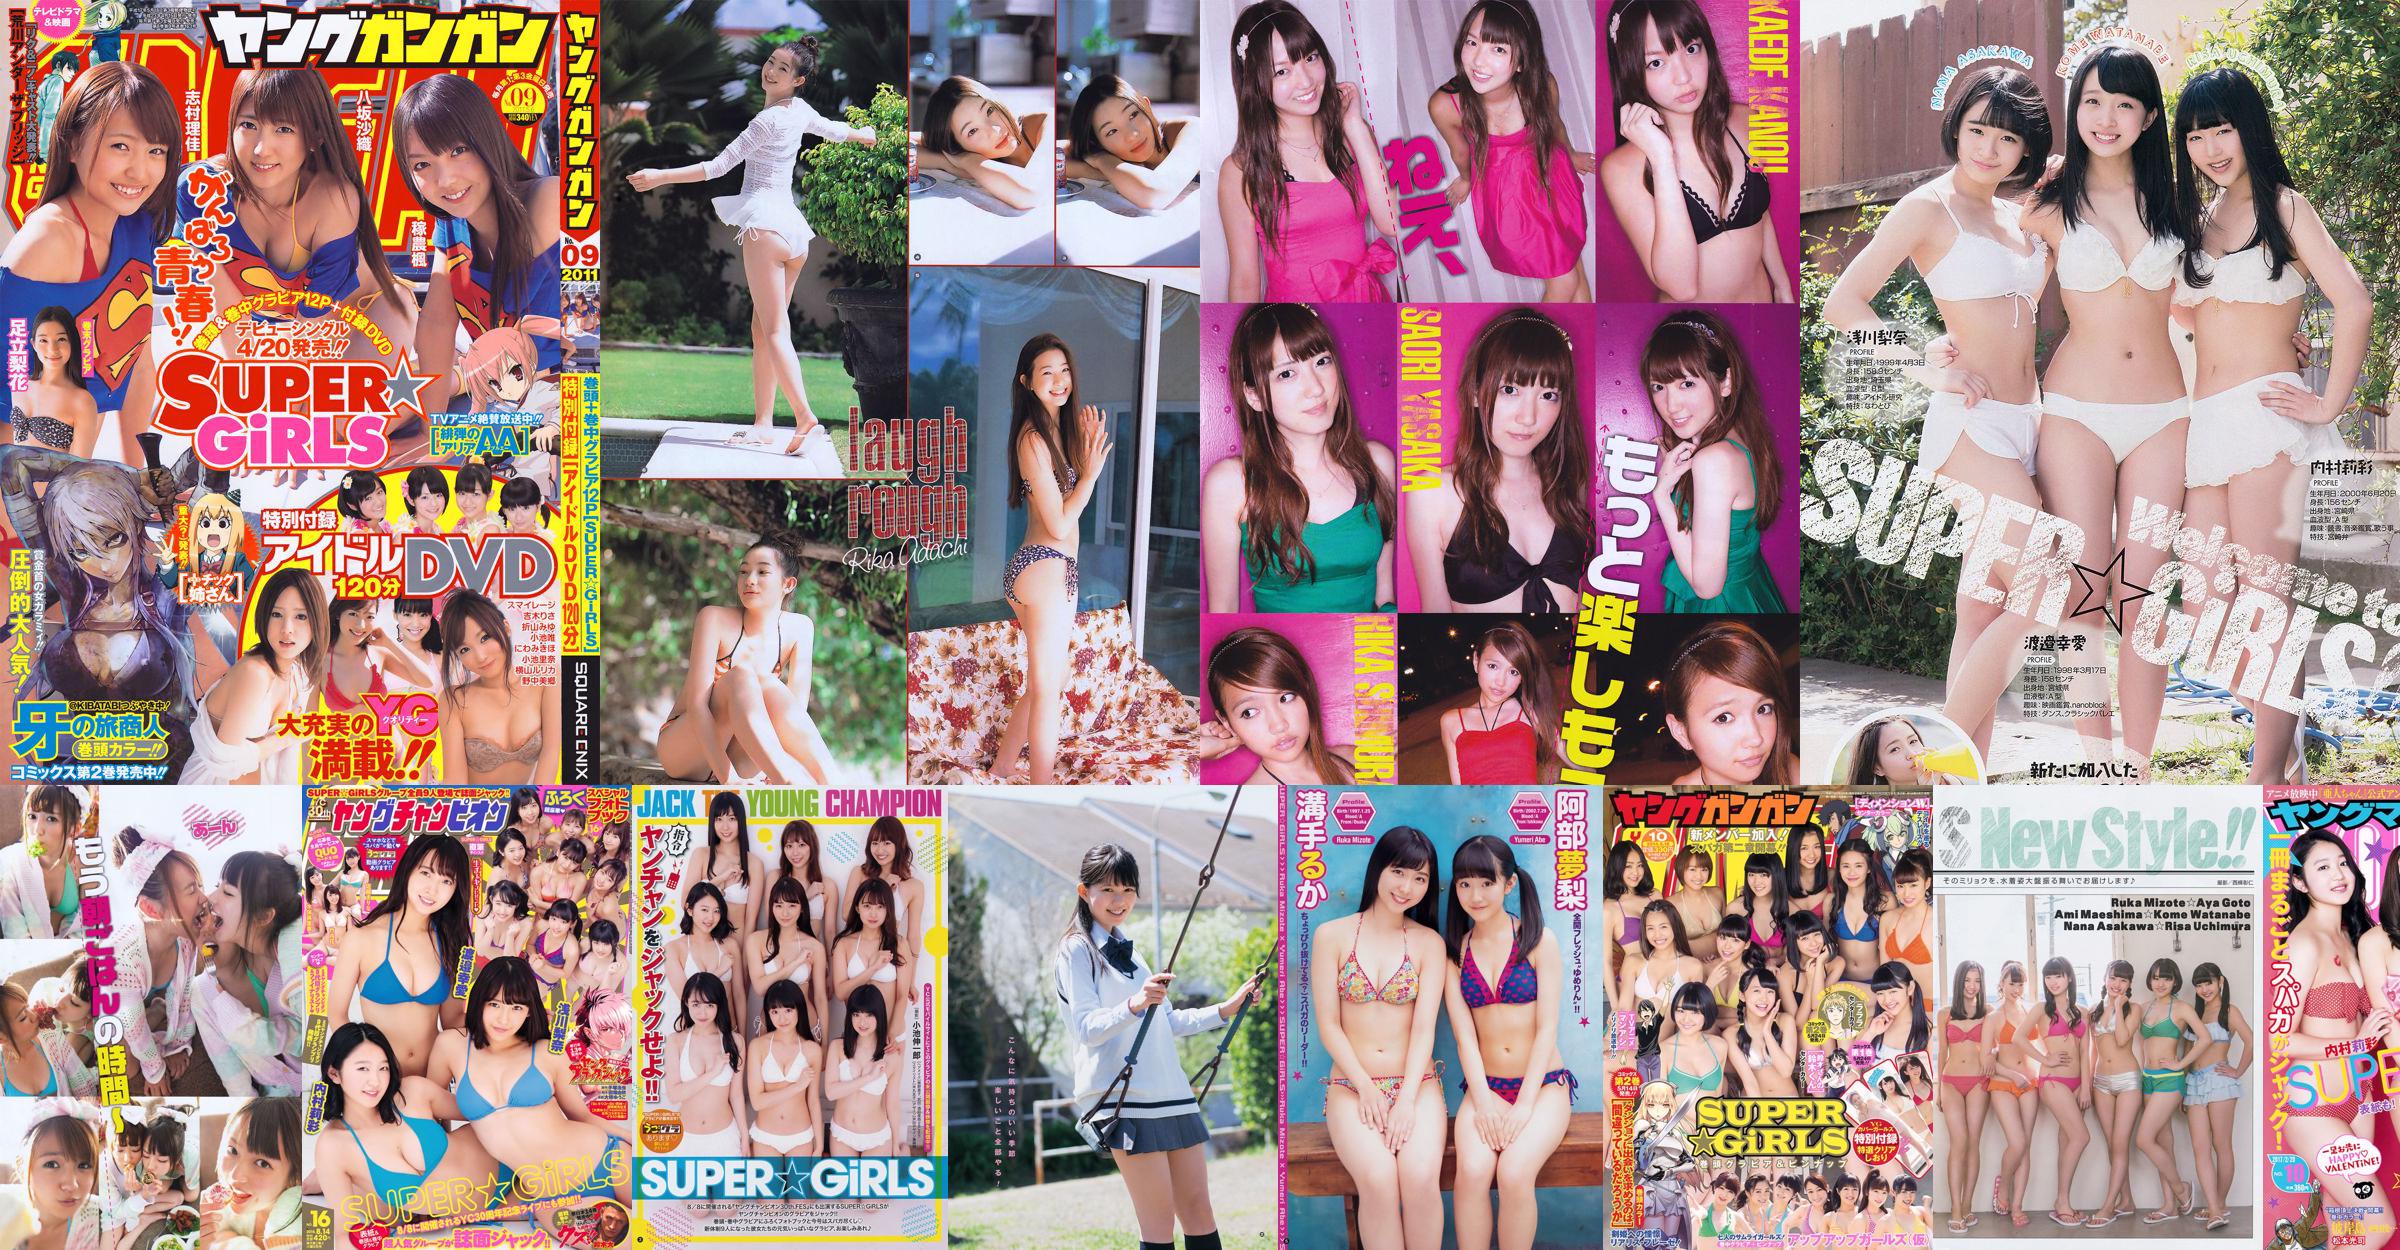 [Young Gangan] SUPER ☆ GiRLS Momose Misaki 2011 No.14 Photo Magazine No.a0d30f Página 1